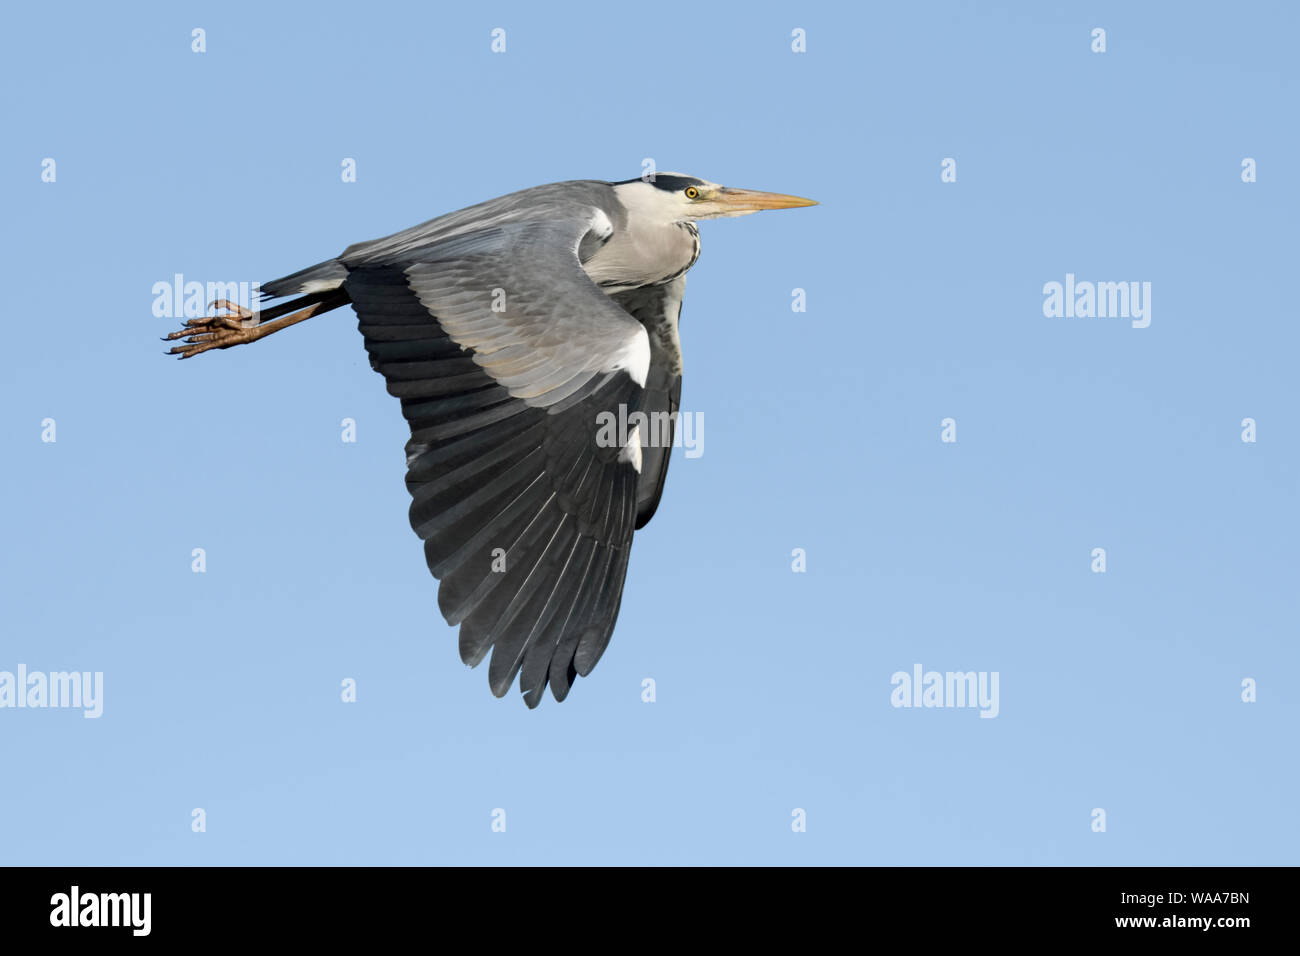 Graureiher/Graureiher (Ardea cinerea) im Flug, Fliegen, blauer Himmel, typische Flug Haltung, Wildlife, Europa. Stockfoto